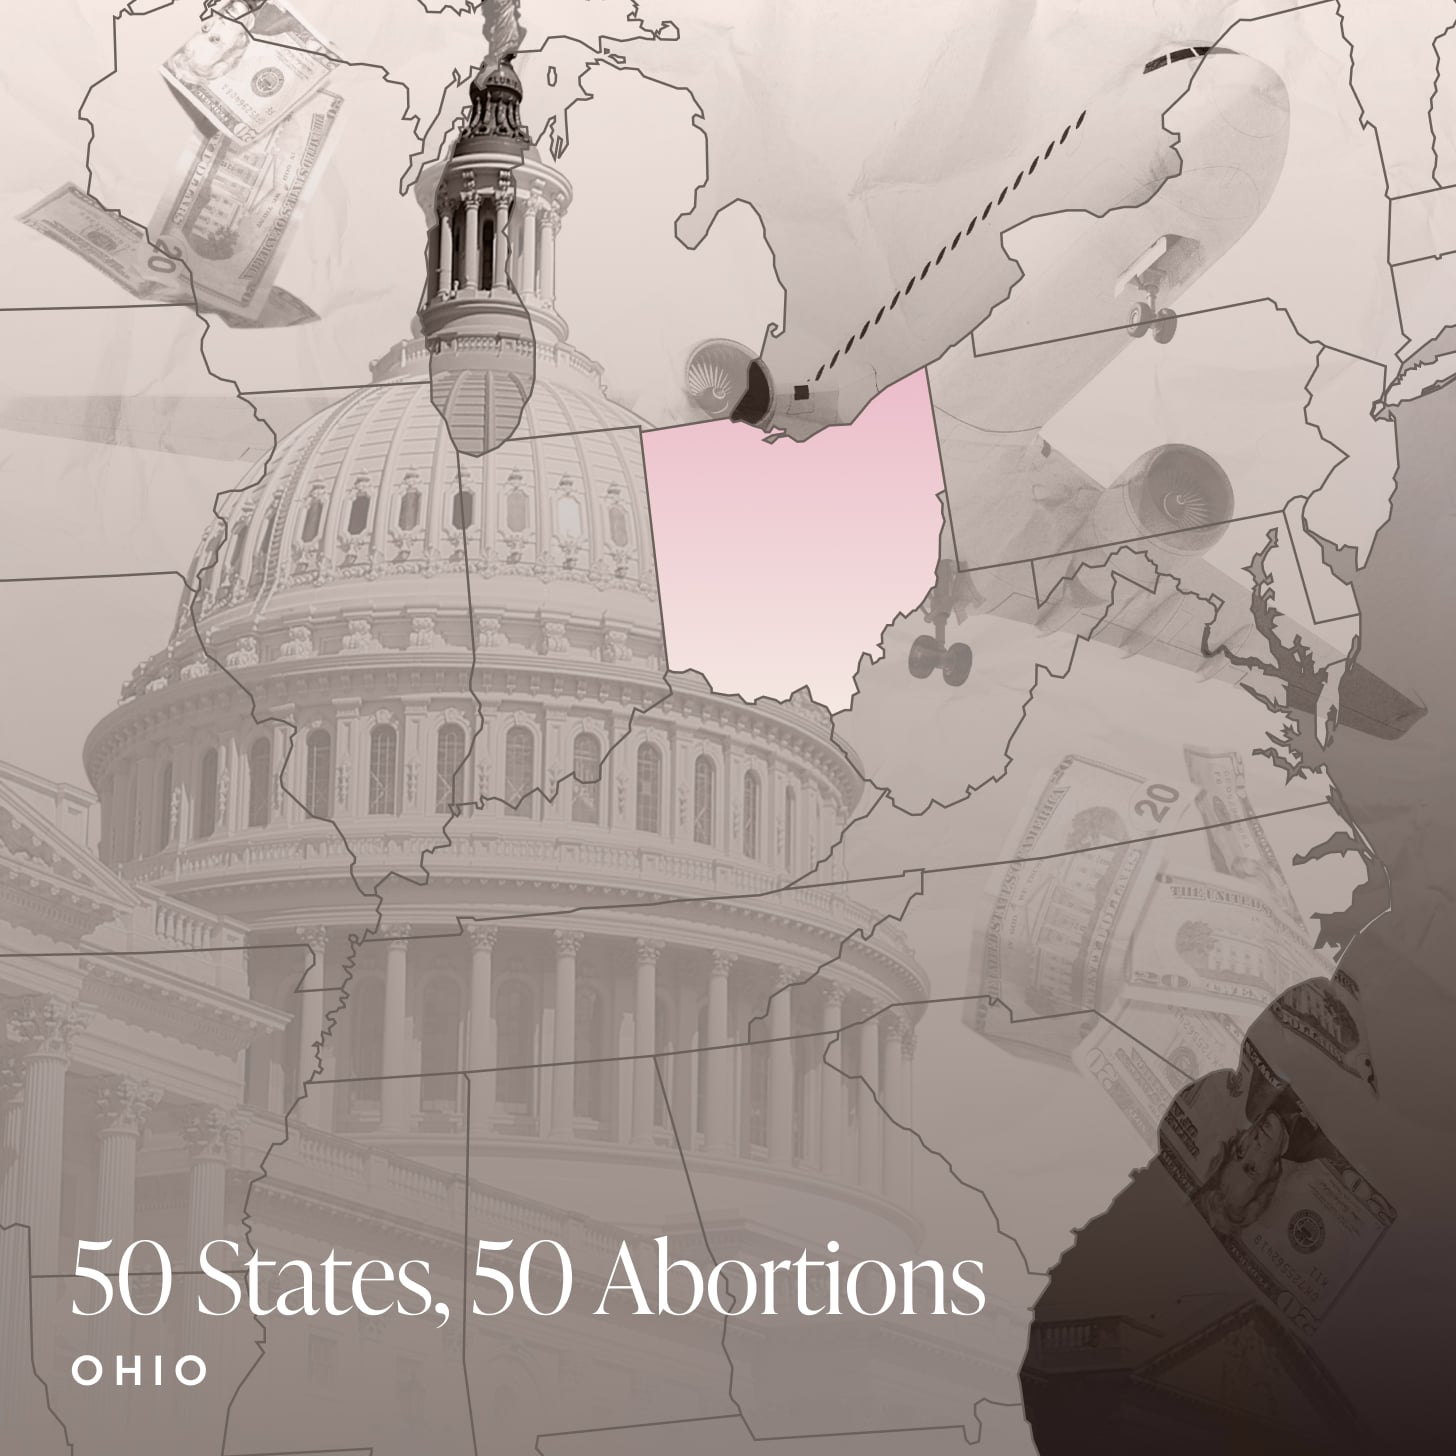 俄亥俄州堕胎的故事